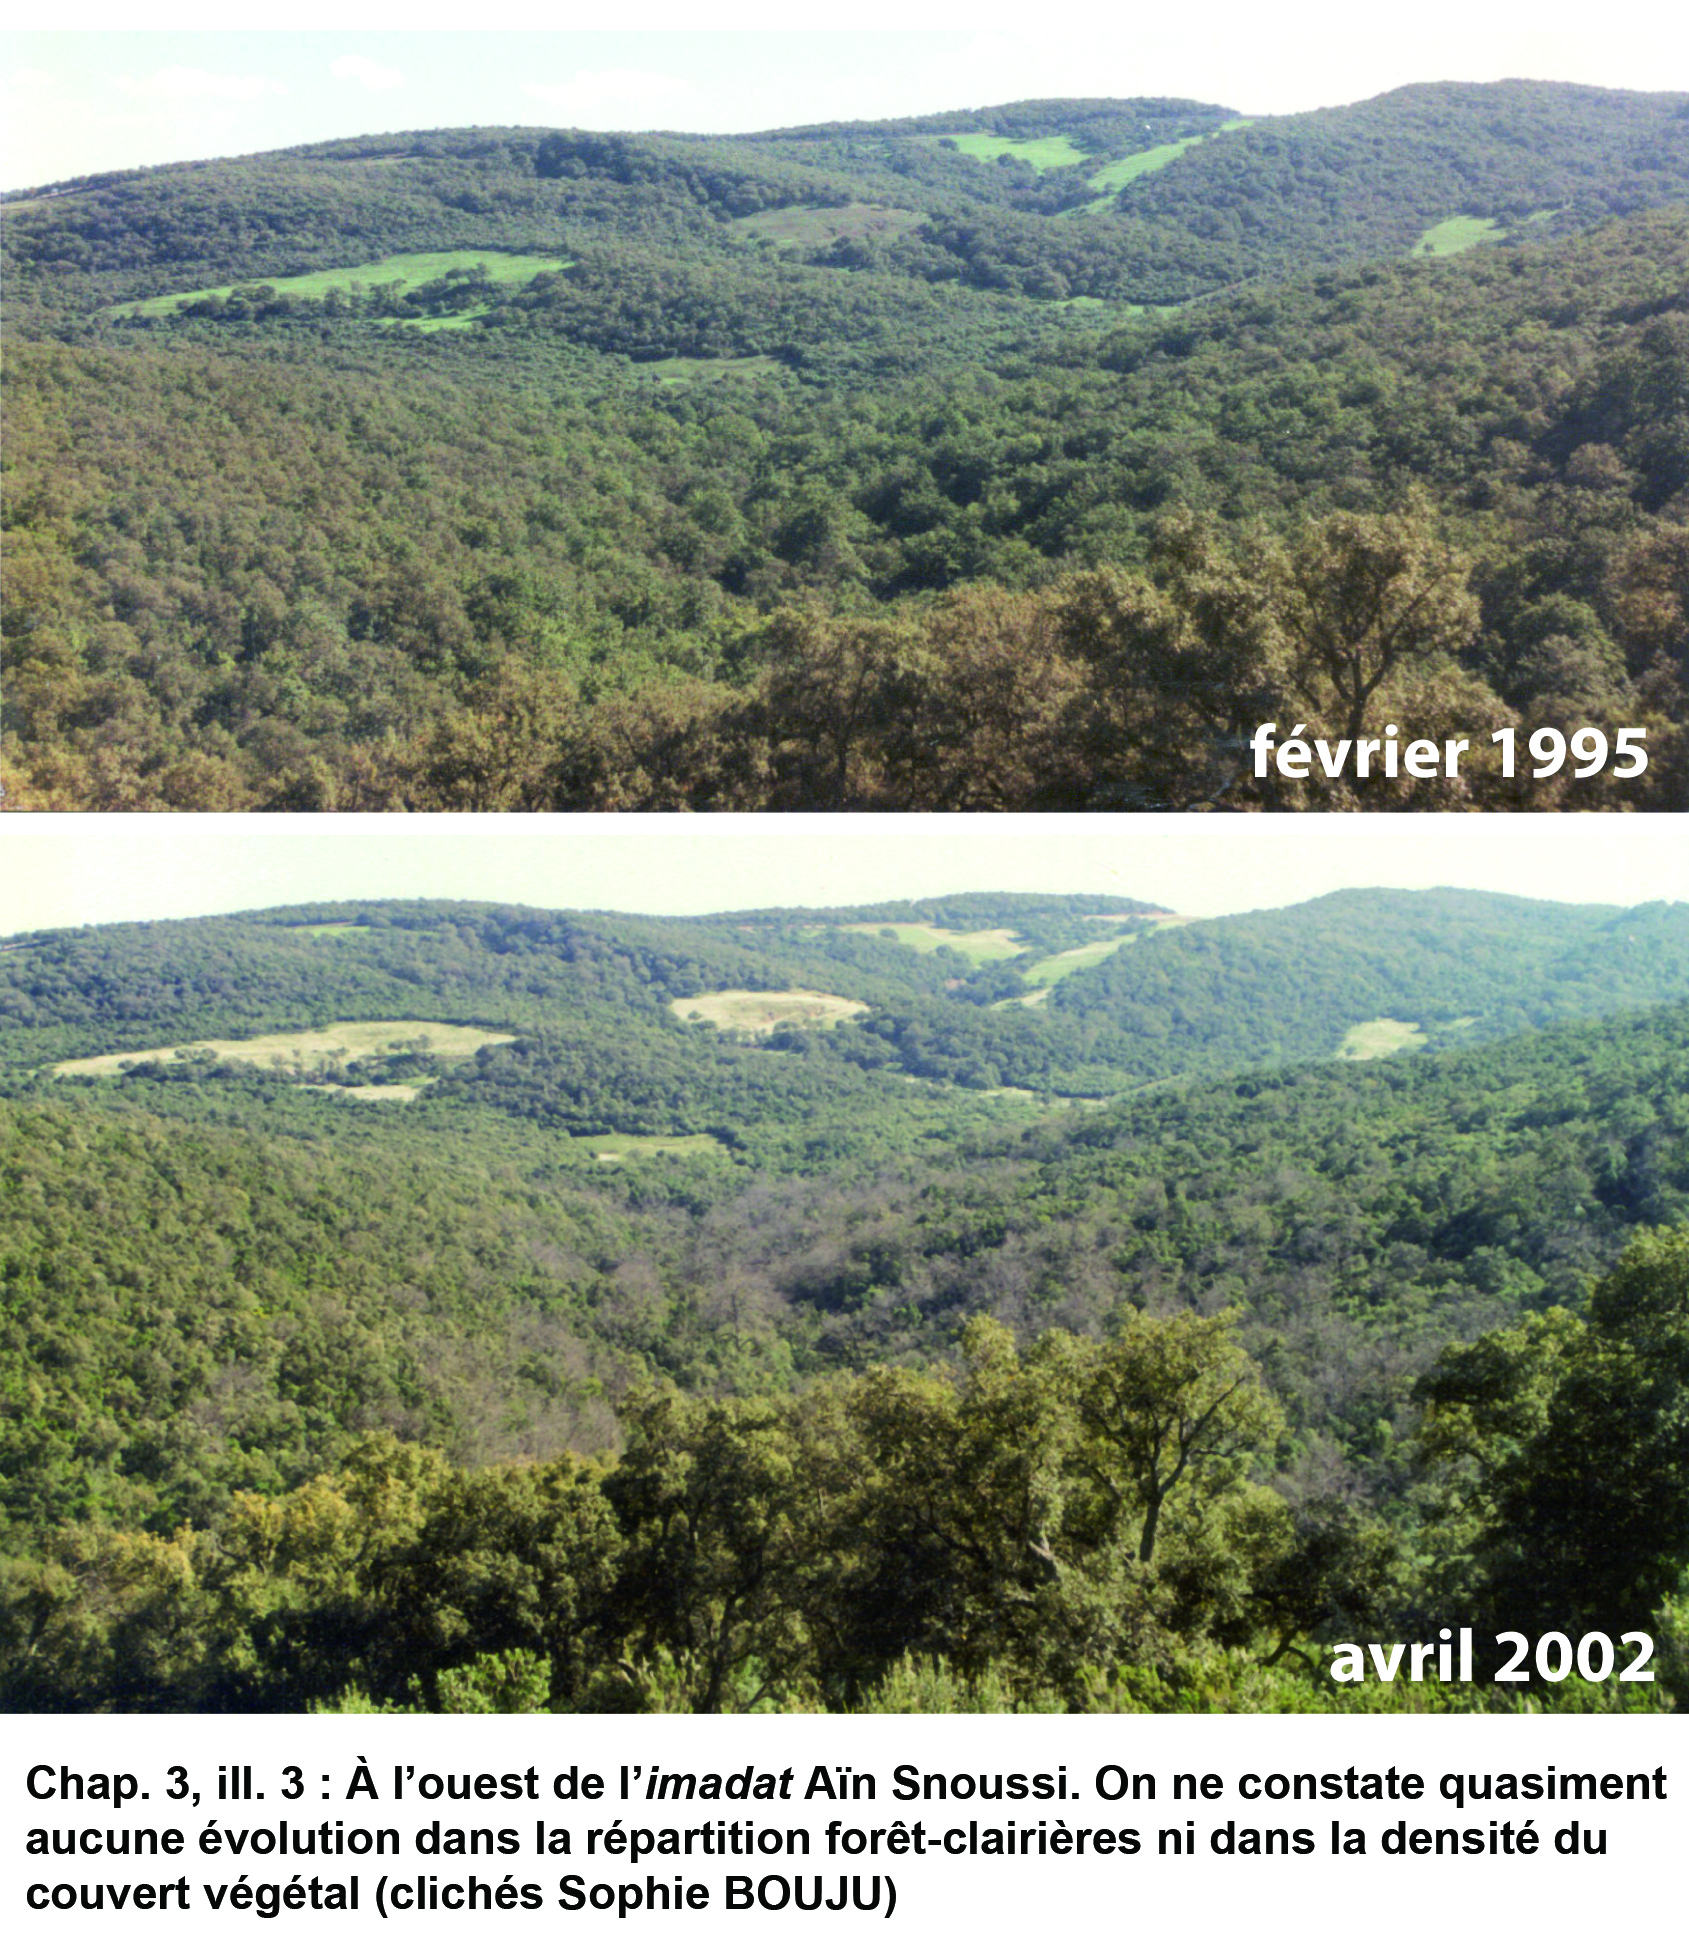 Illustration 3 : Évolution des paysages de 1995 à 2002 (imadat Aïn Snoussi)